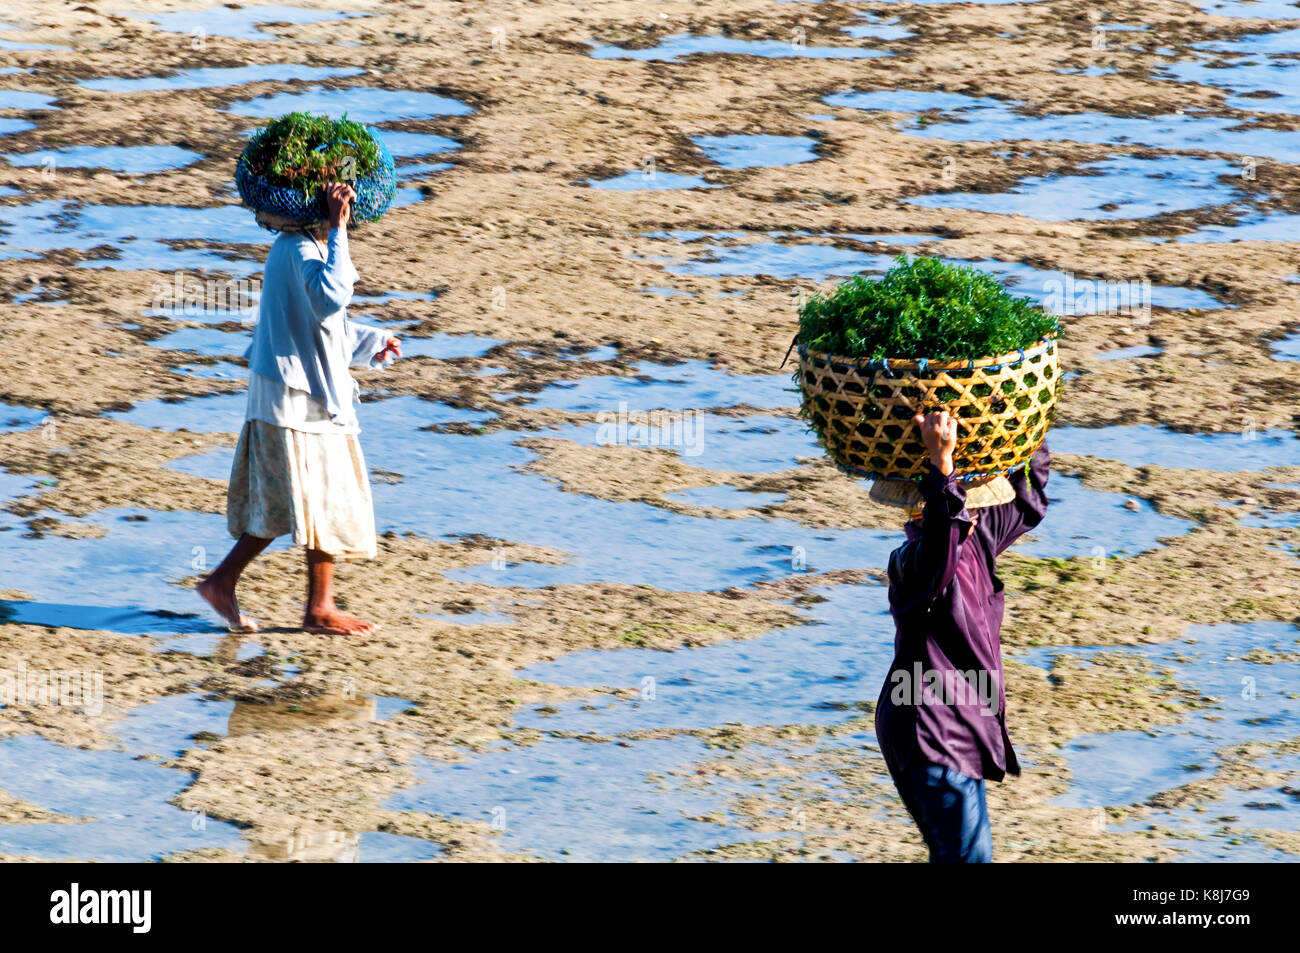 Indonesien. Bali. Nusa Lembongan Insel. Die Bewohner der Insel haben sich auf den Algenanbau spezialisiert. Bauern tragen Algen mit Körben Stockfoto